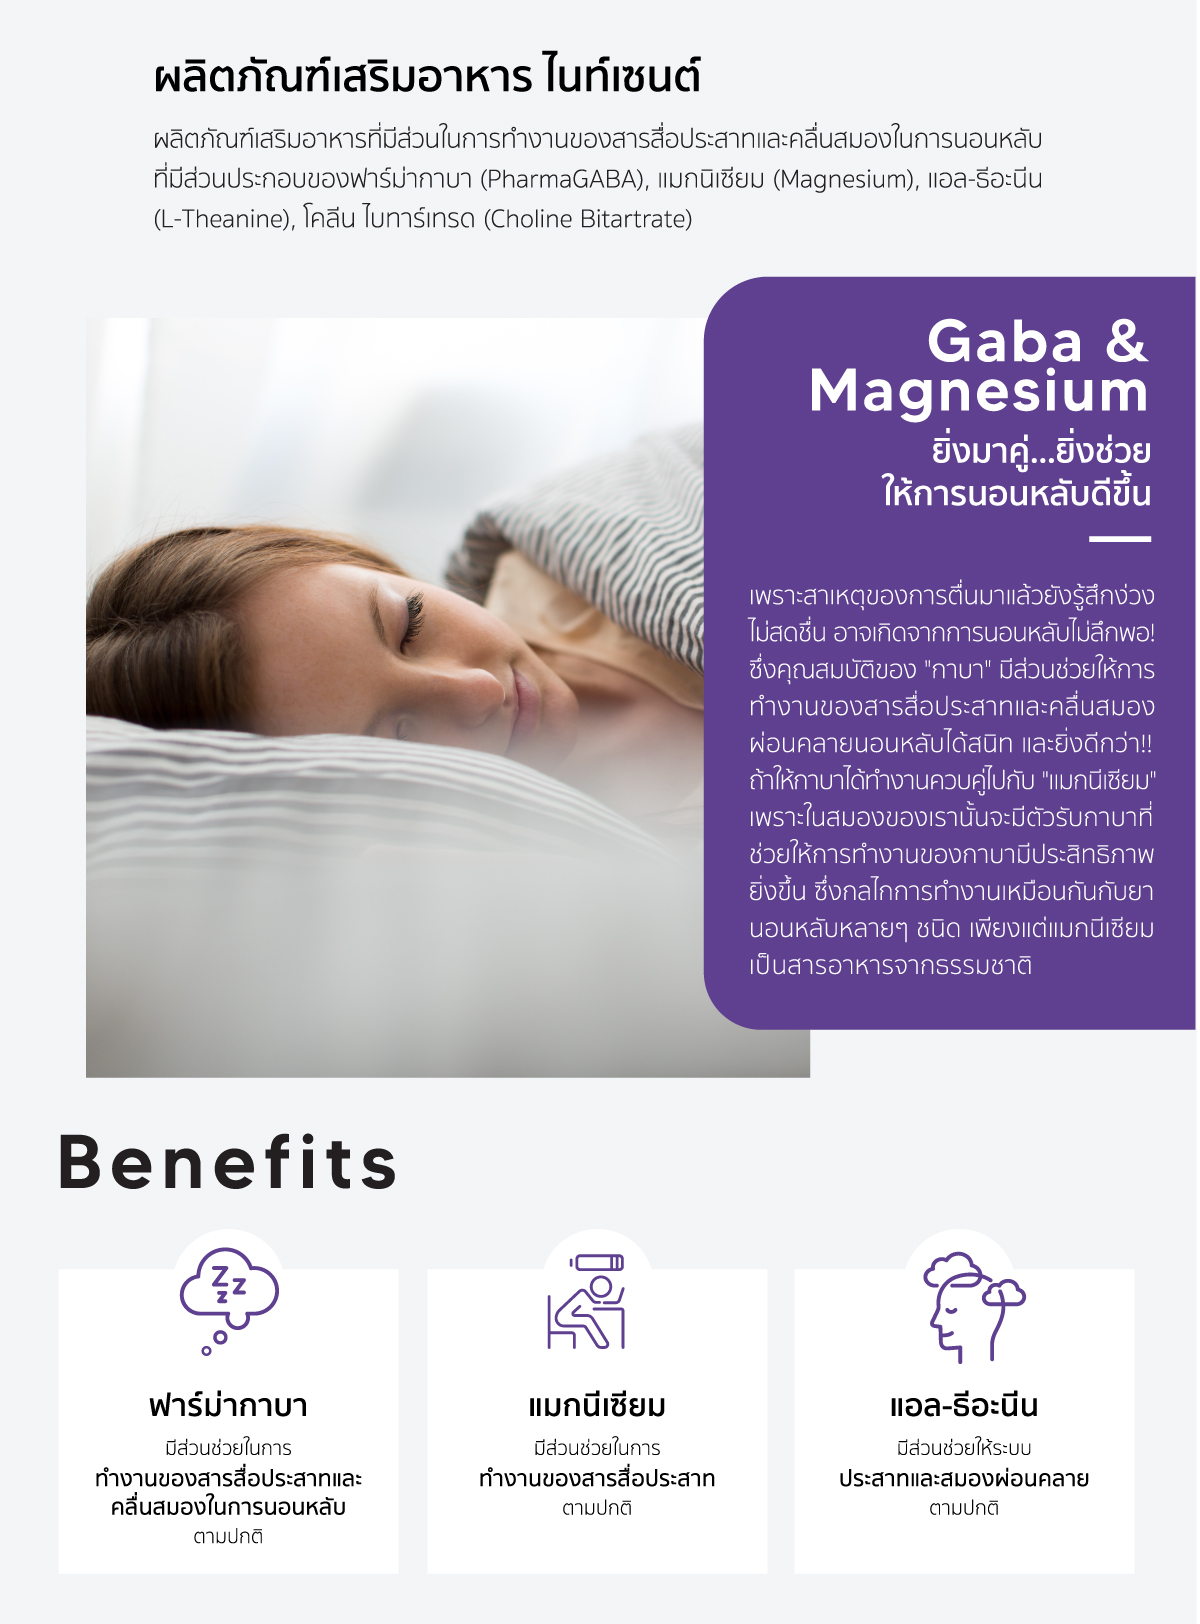 Nitesense ฟาร์มากาบา มีส่วนช่วยในการทำงานของสารสื่อประสาทและการนอนหลับตามปกติ